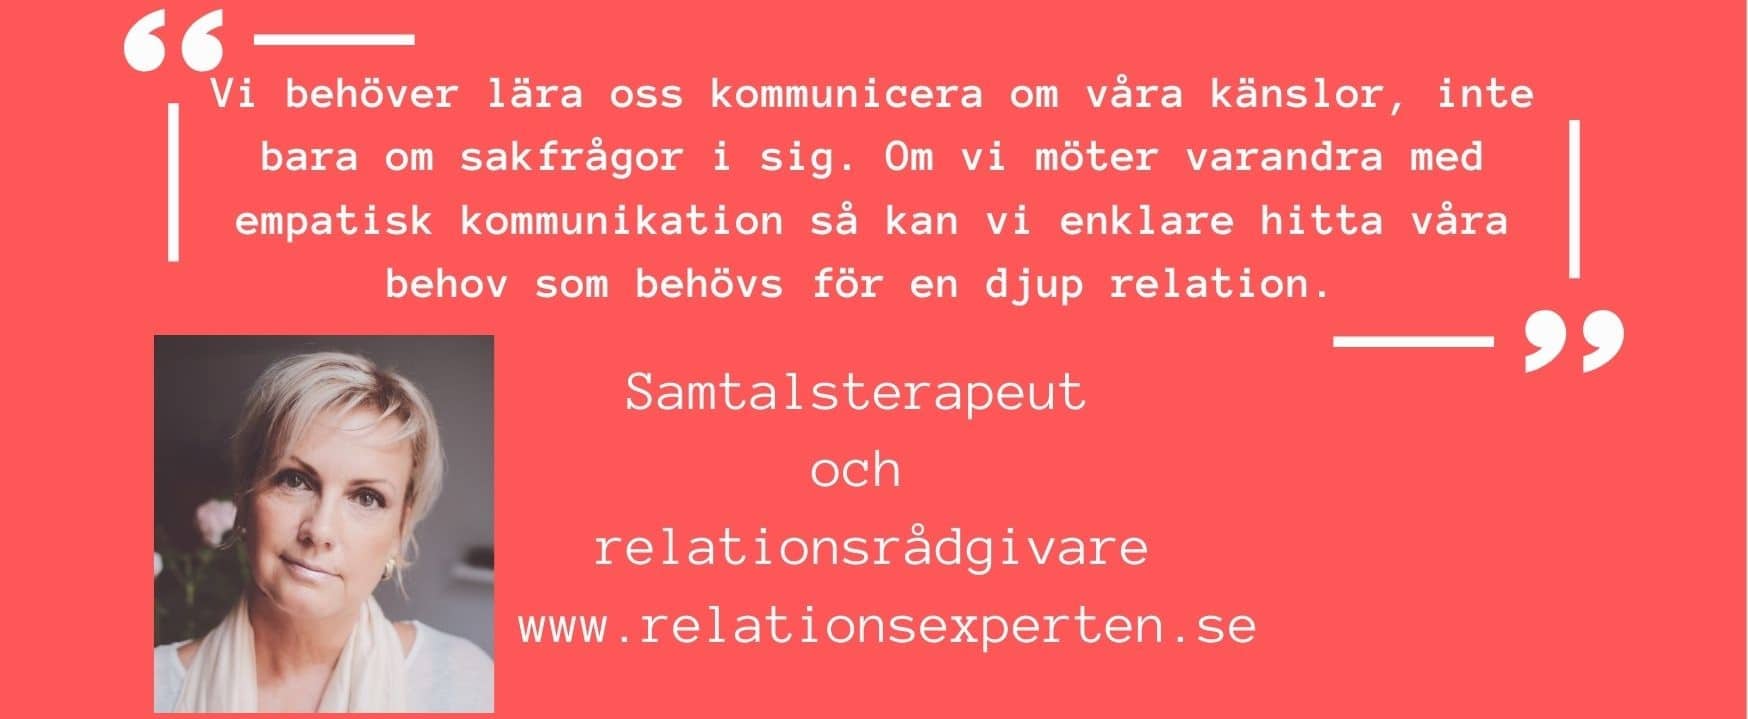 Charlotte Sander relationsexpert